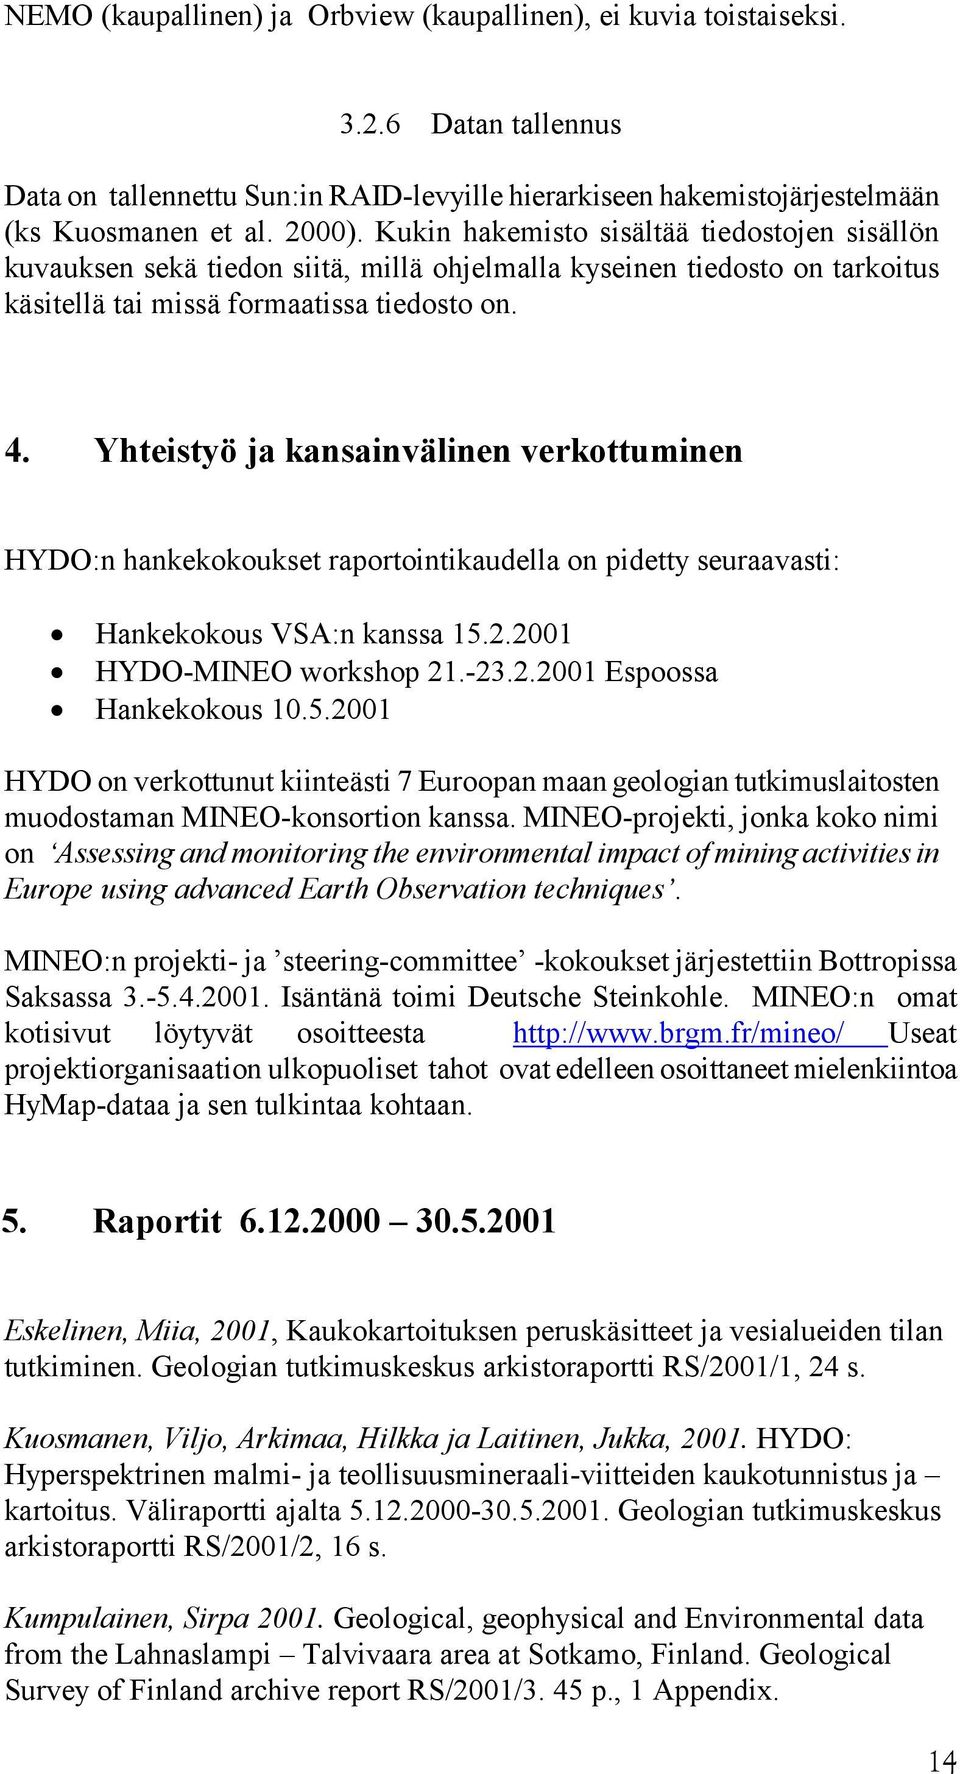 Yhteistyö ja kansainvälinen verkottuminen HYDO:n hankekokoukset raportointikaudella on pidetty seuraavasti: Hankekokous VSA:n kanssa 15.2.2001 HYDO-MINEO workshop 21.-23.2.2001 Espoossa Hankekokous 10.